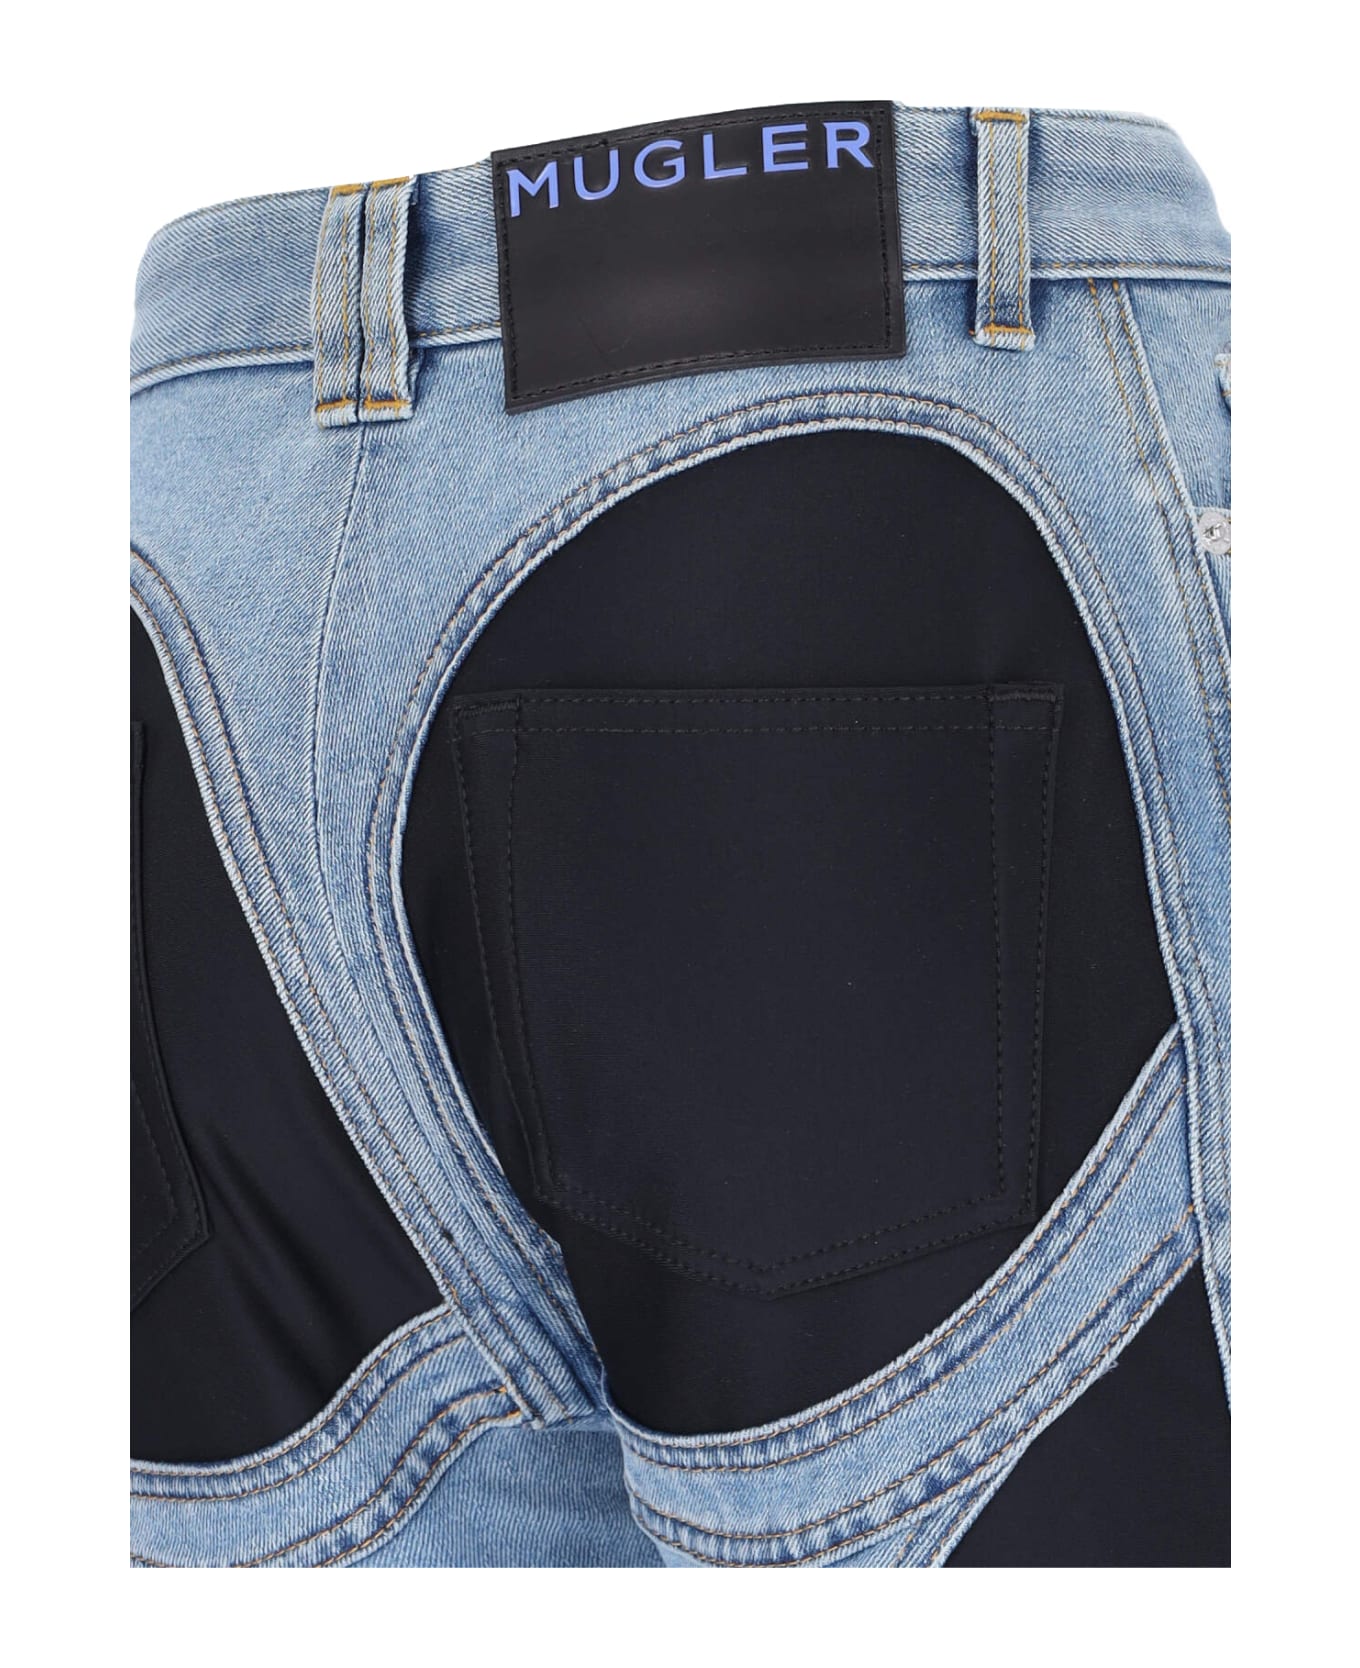 Mugler 'bi-material' Jeans - Light Blue